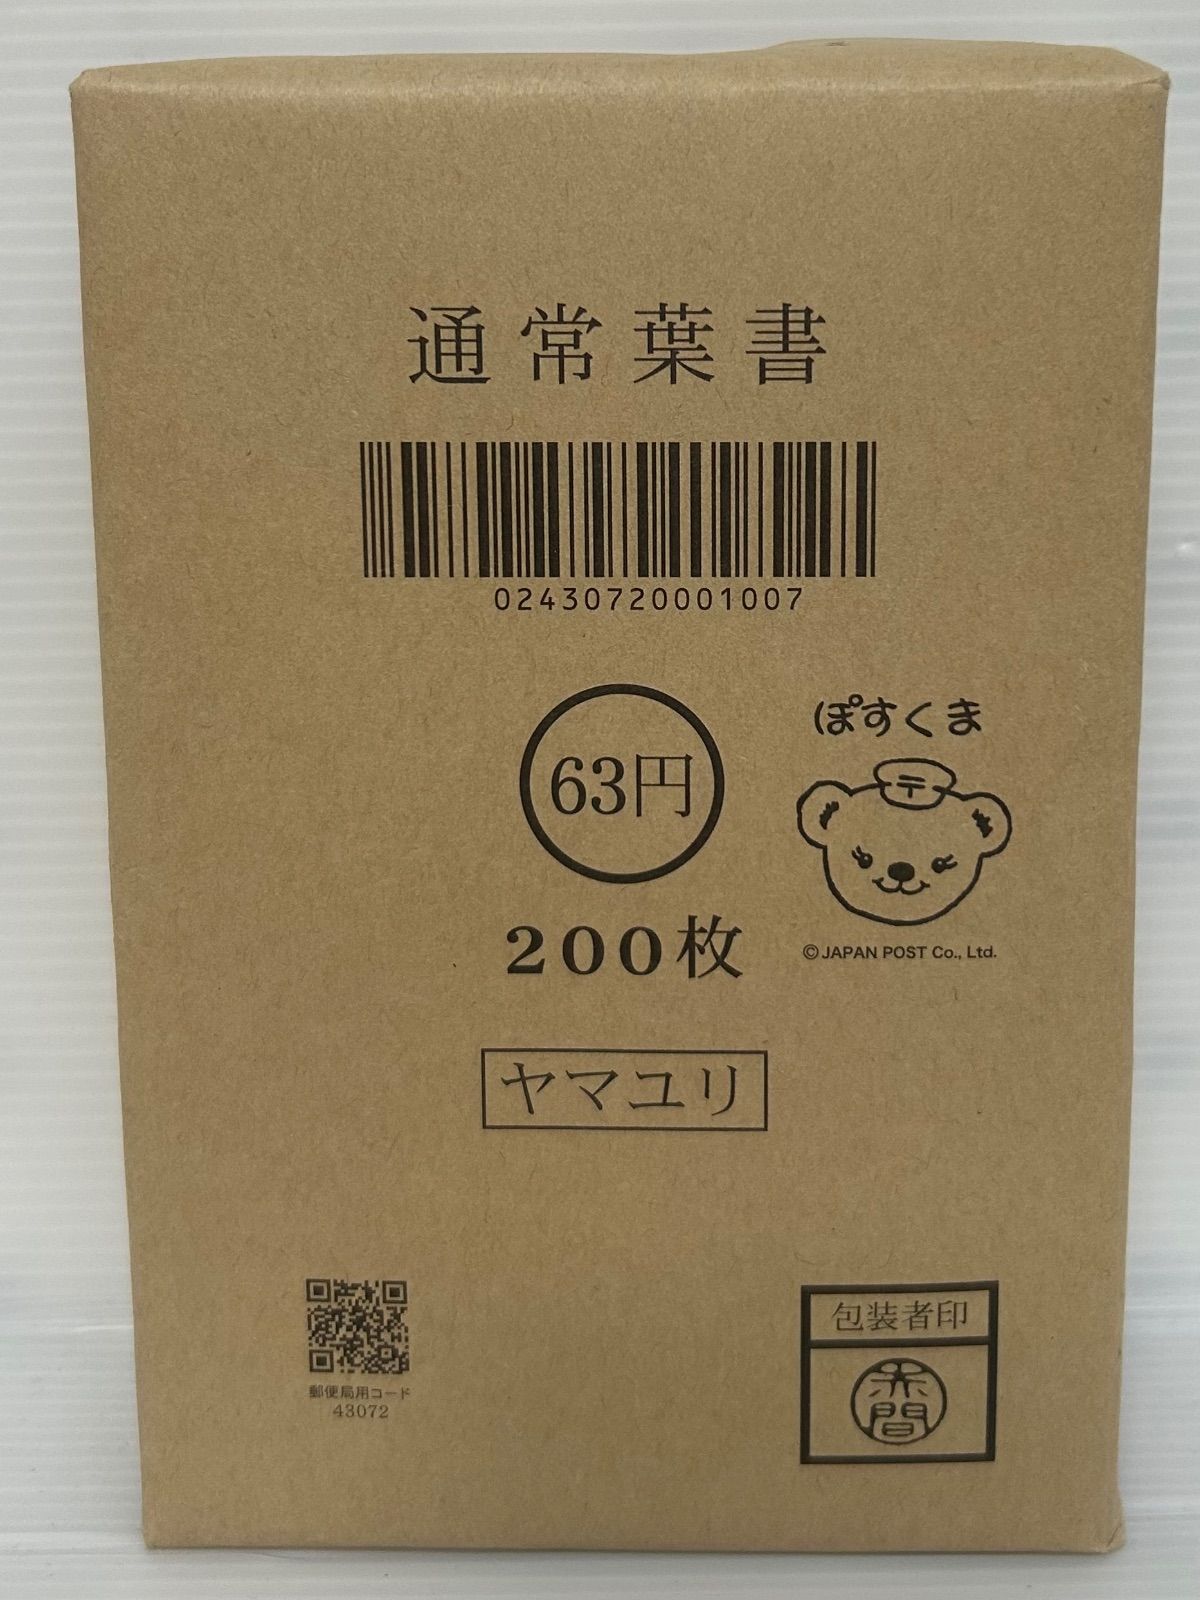 官製ハガキ インクジェット 63円×200枚 通常葉書 A0606-1